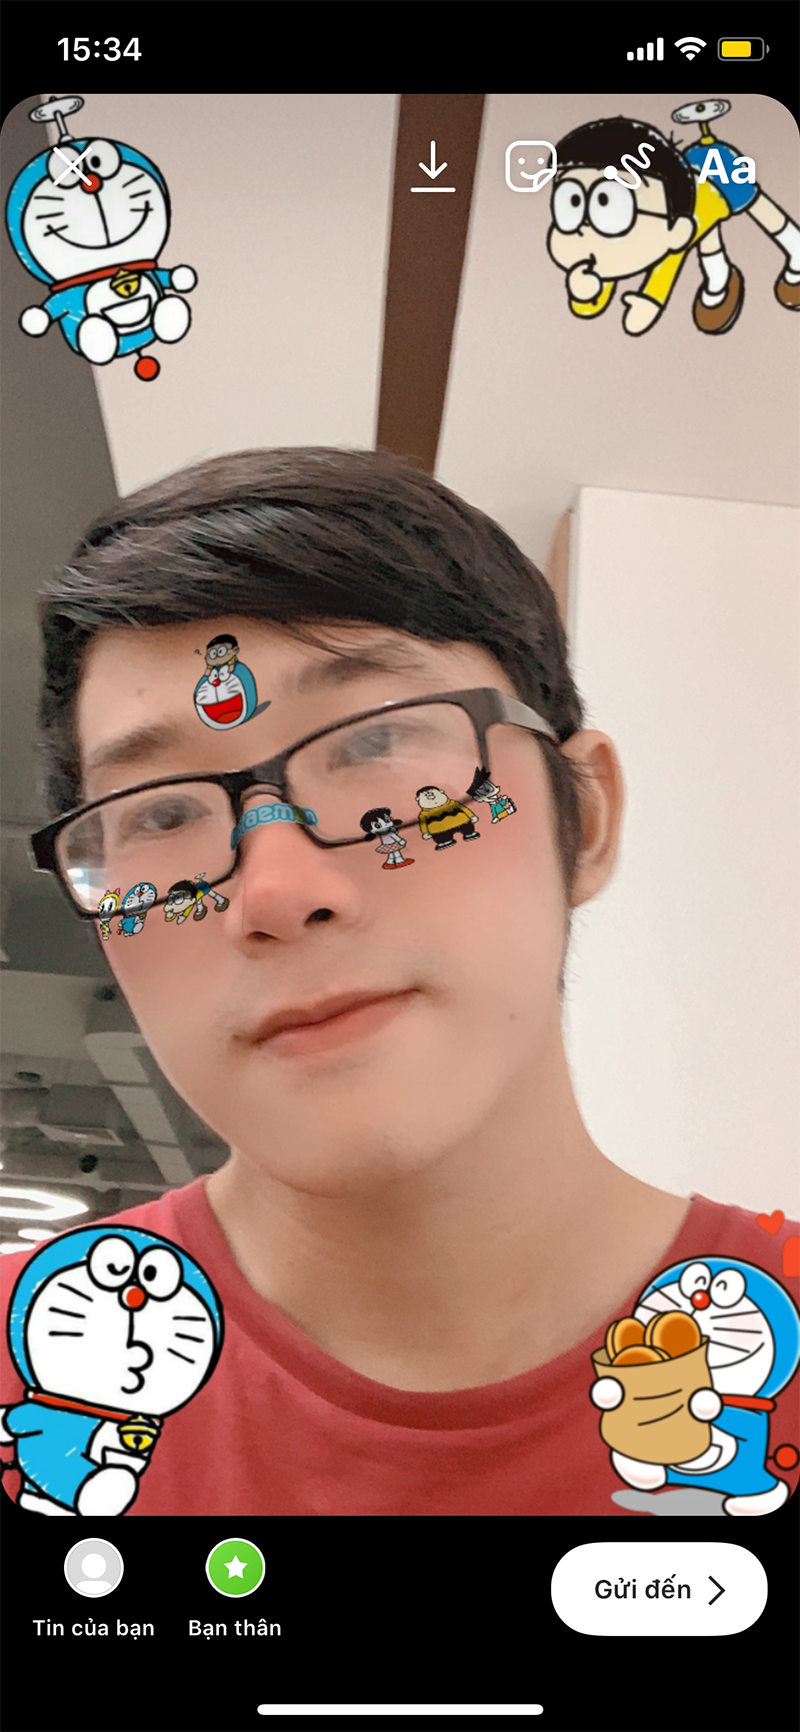 1660717080 535 Cach chup hinh co hieu ung Doraemon voi Instagram